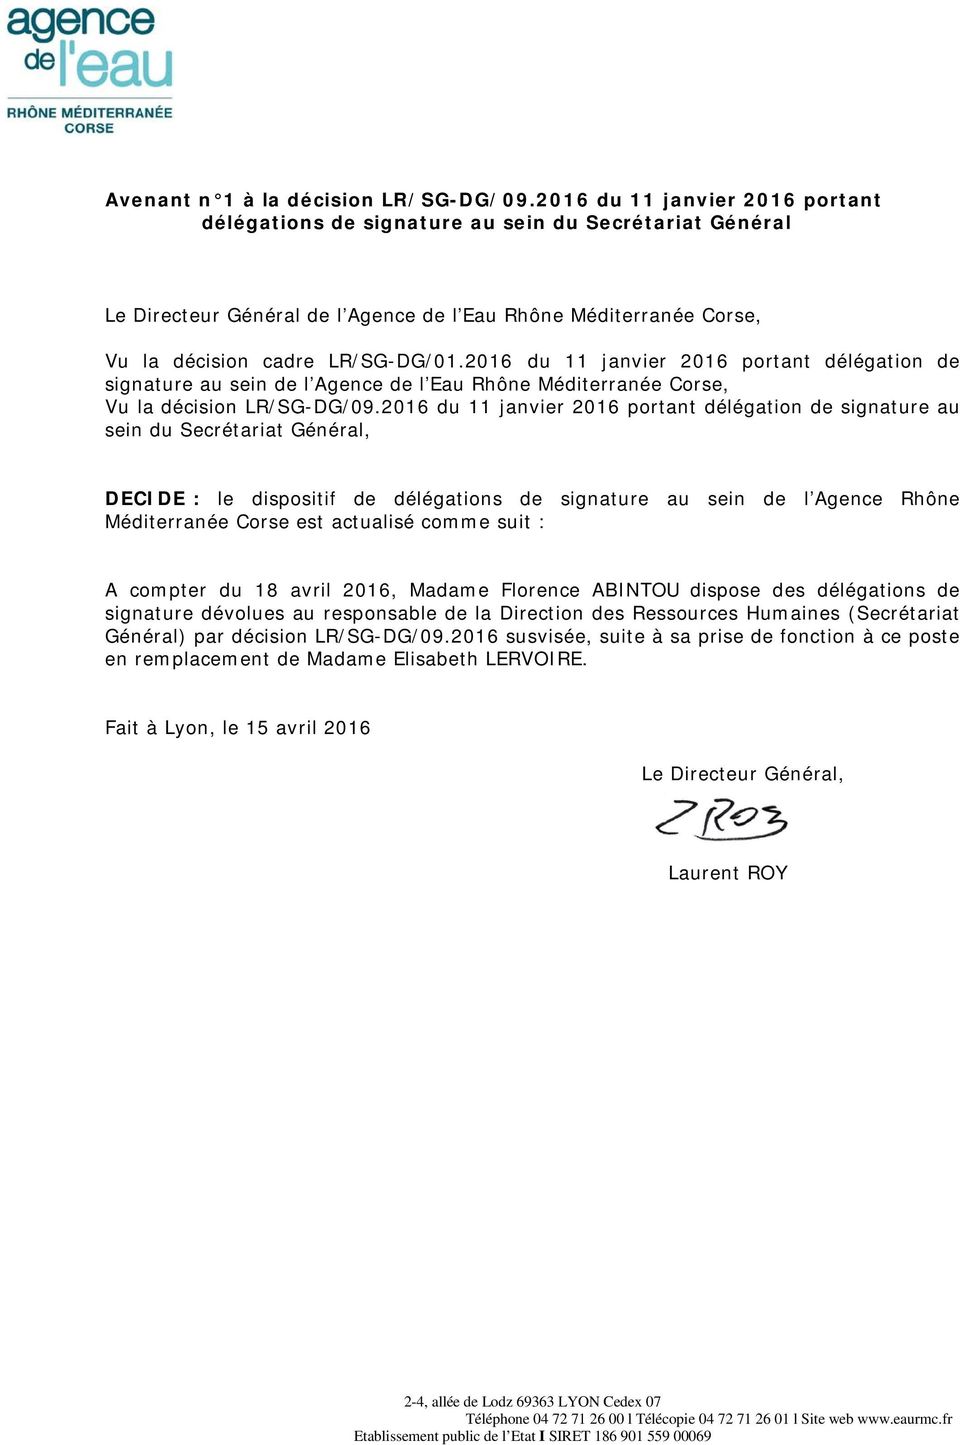 2016 du 11 janvier 2016 portant délégation de signature au sein du Secrétariat Général, DECIDE : le dispositif de délégations de signature au sein de l Agence Rhône Méditerranée Corse est actualisé